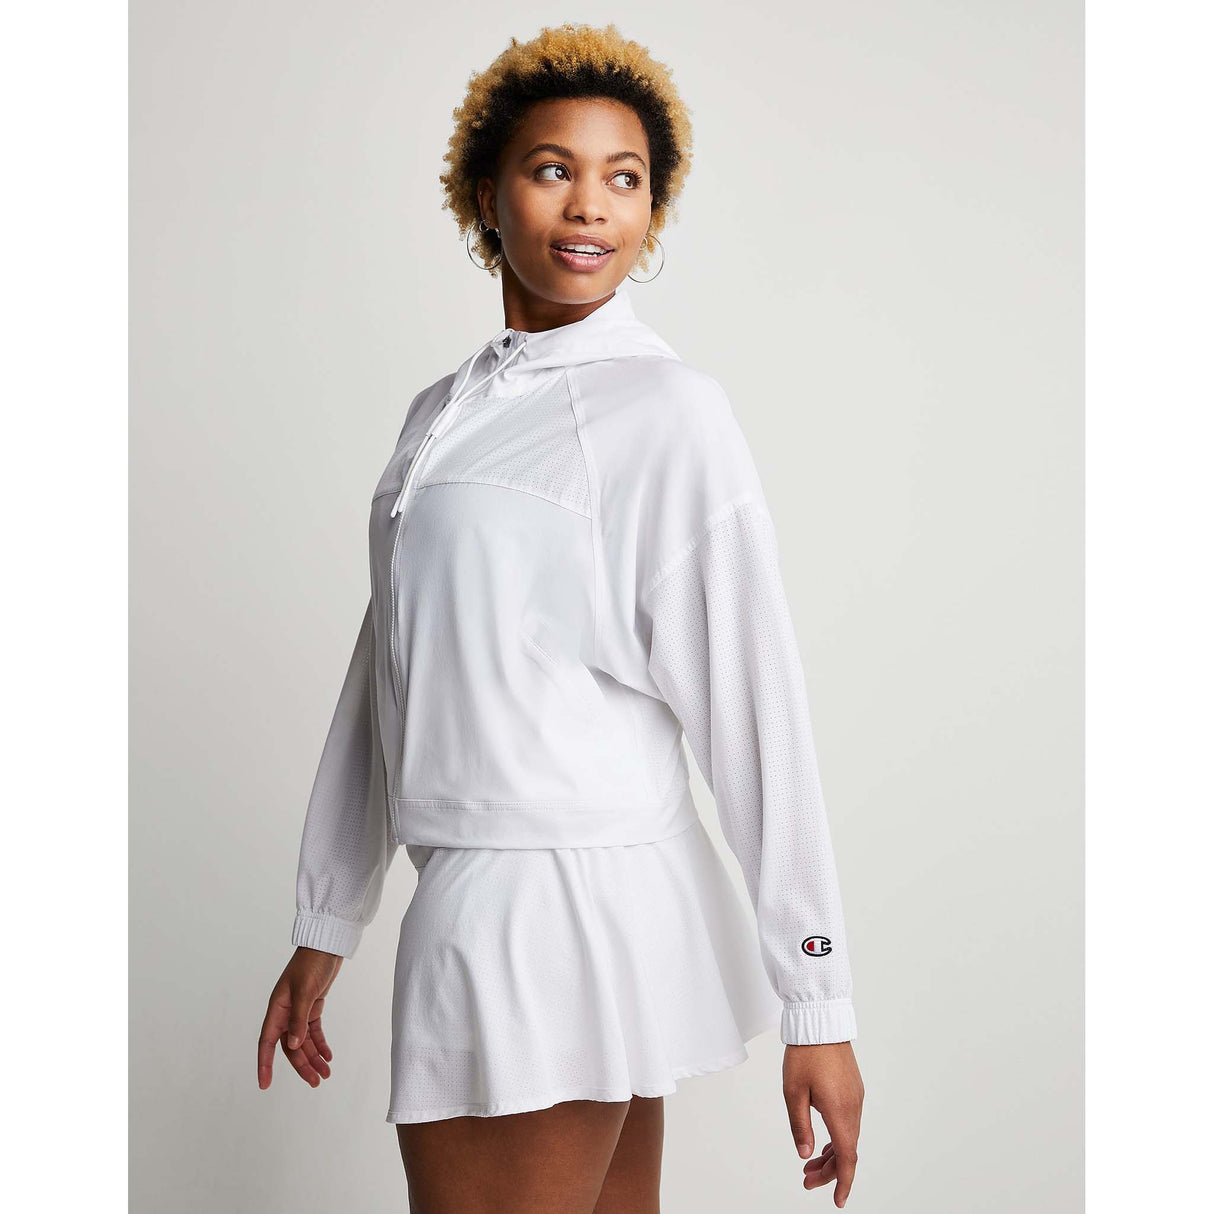 Champion City Sport Eco Full Zip Jacket veste légère blanc femme lateral 2